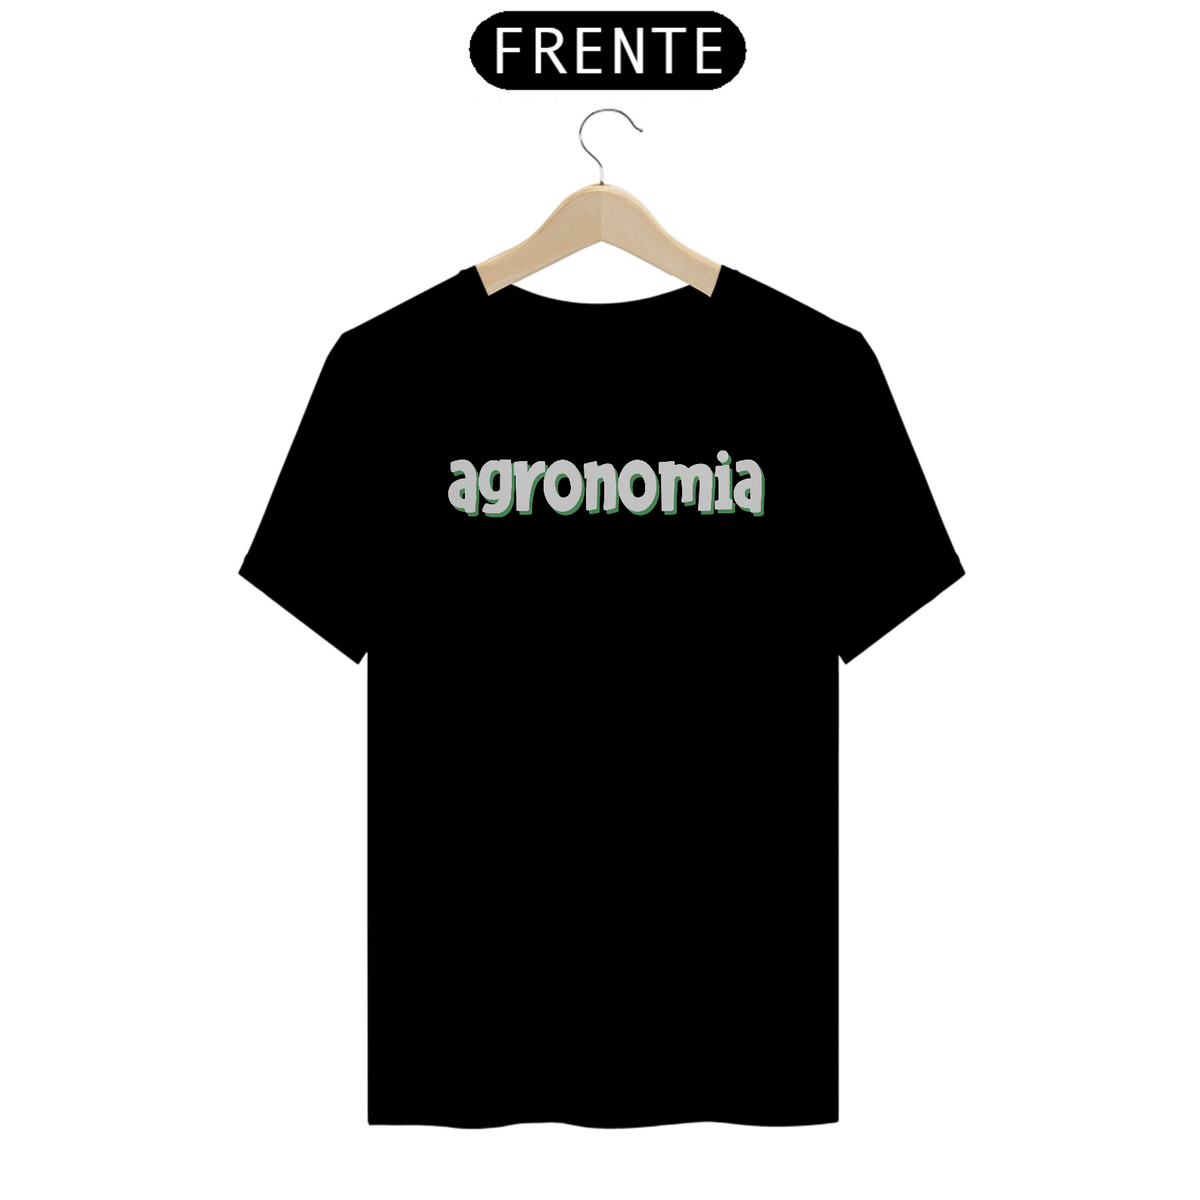 Nome do produto: Camiseta [agronomia] {preto, verde, cinza, branco} - frente - letras em relevo